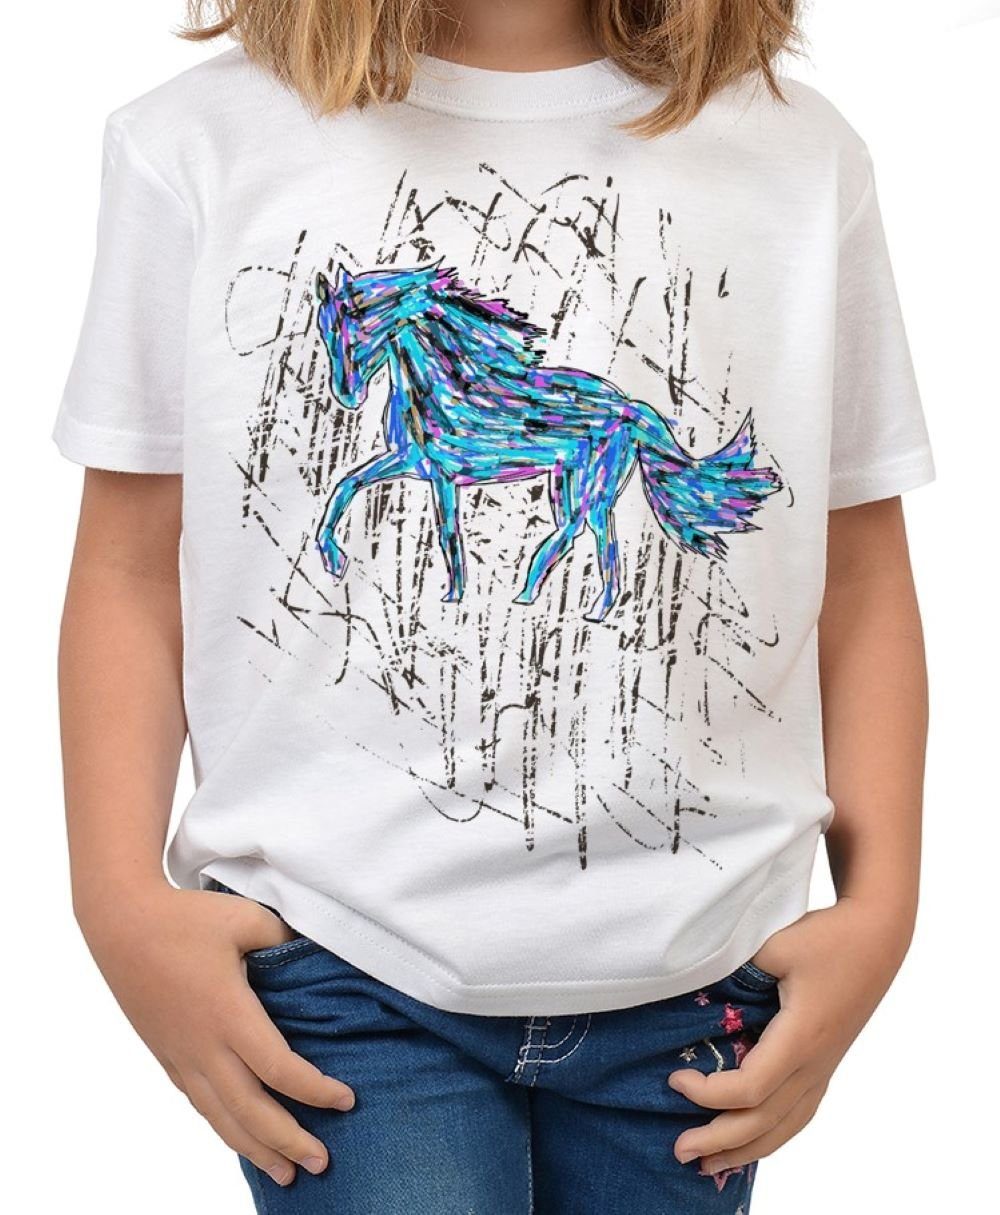 Tini - Shirts Kindershirt bunt T-Shirt Pferd Zeichnung Motiv Pferde Kindershirt bunt, Pferde blau 